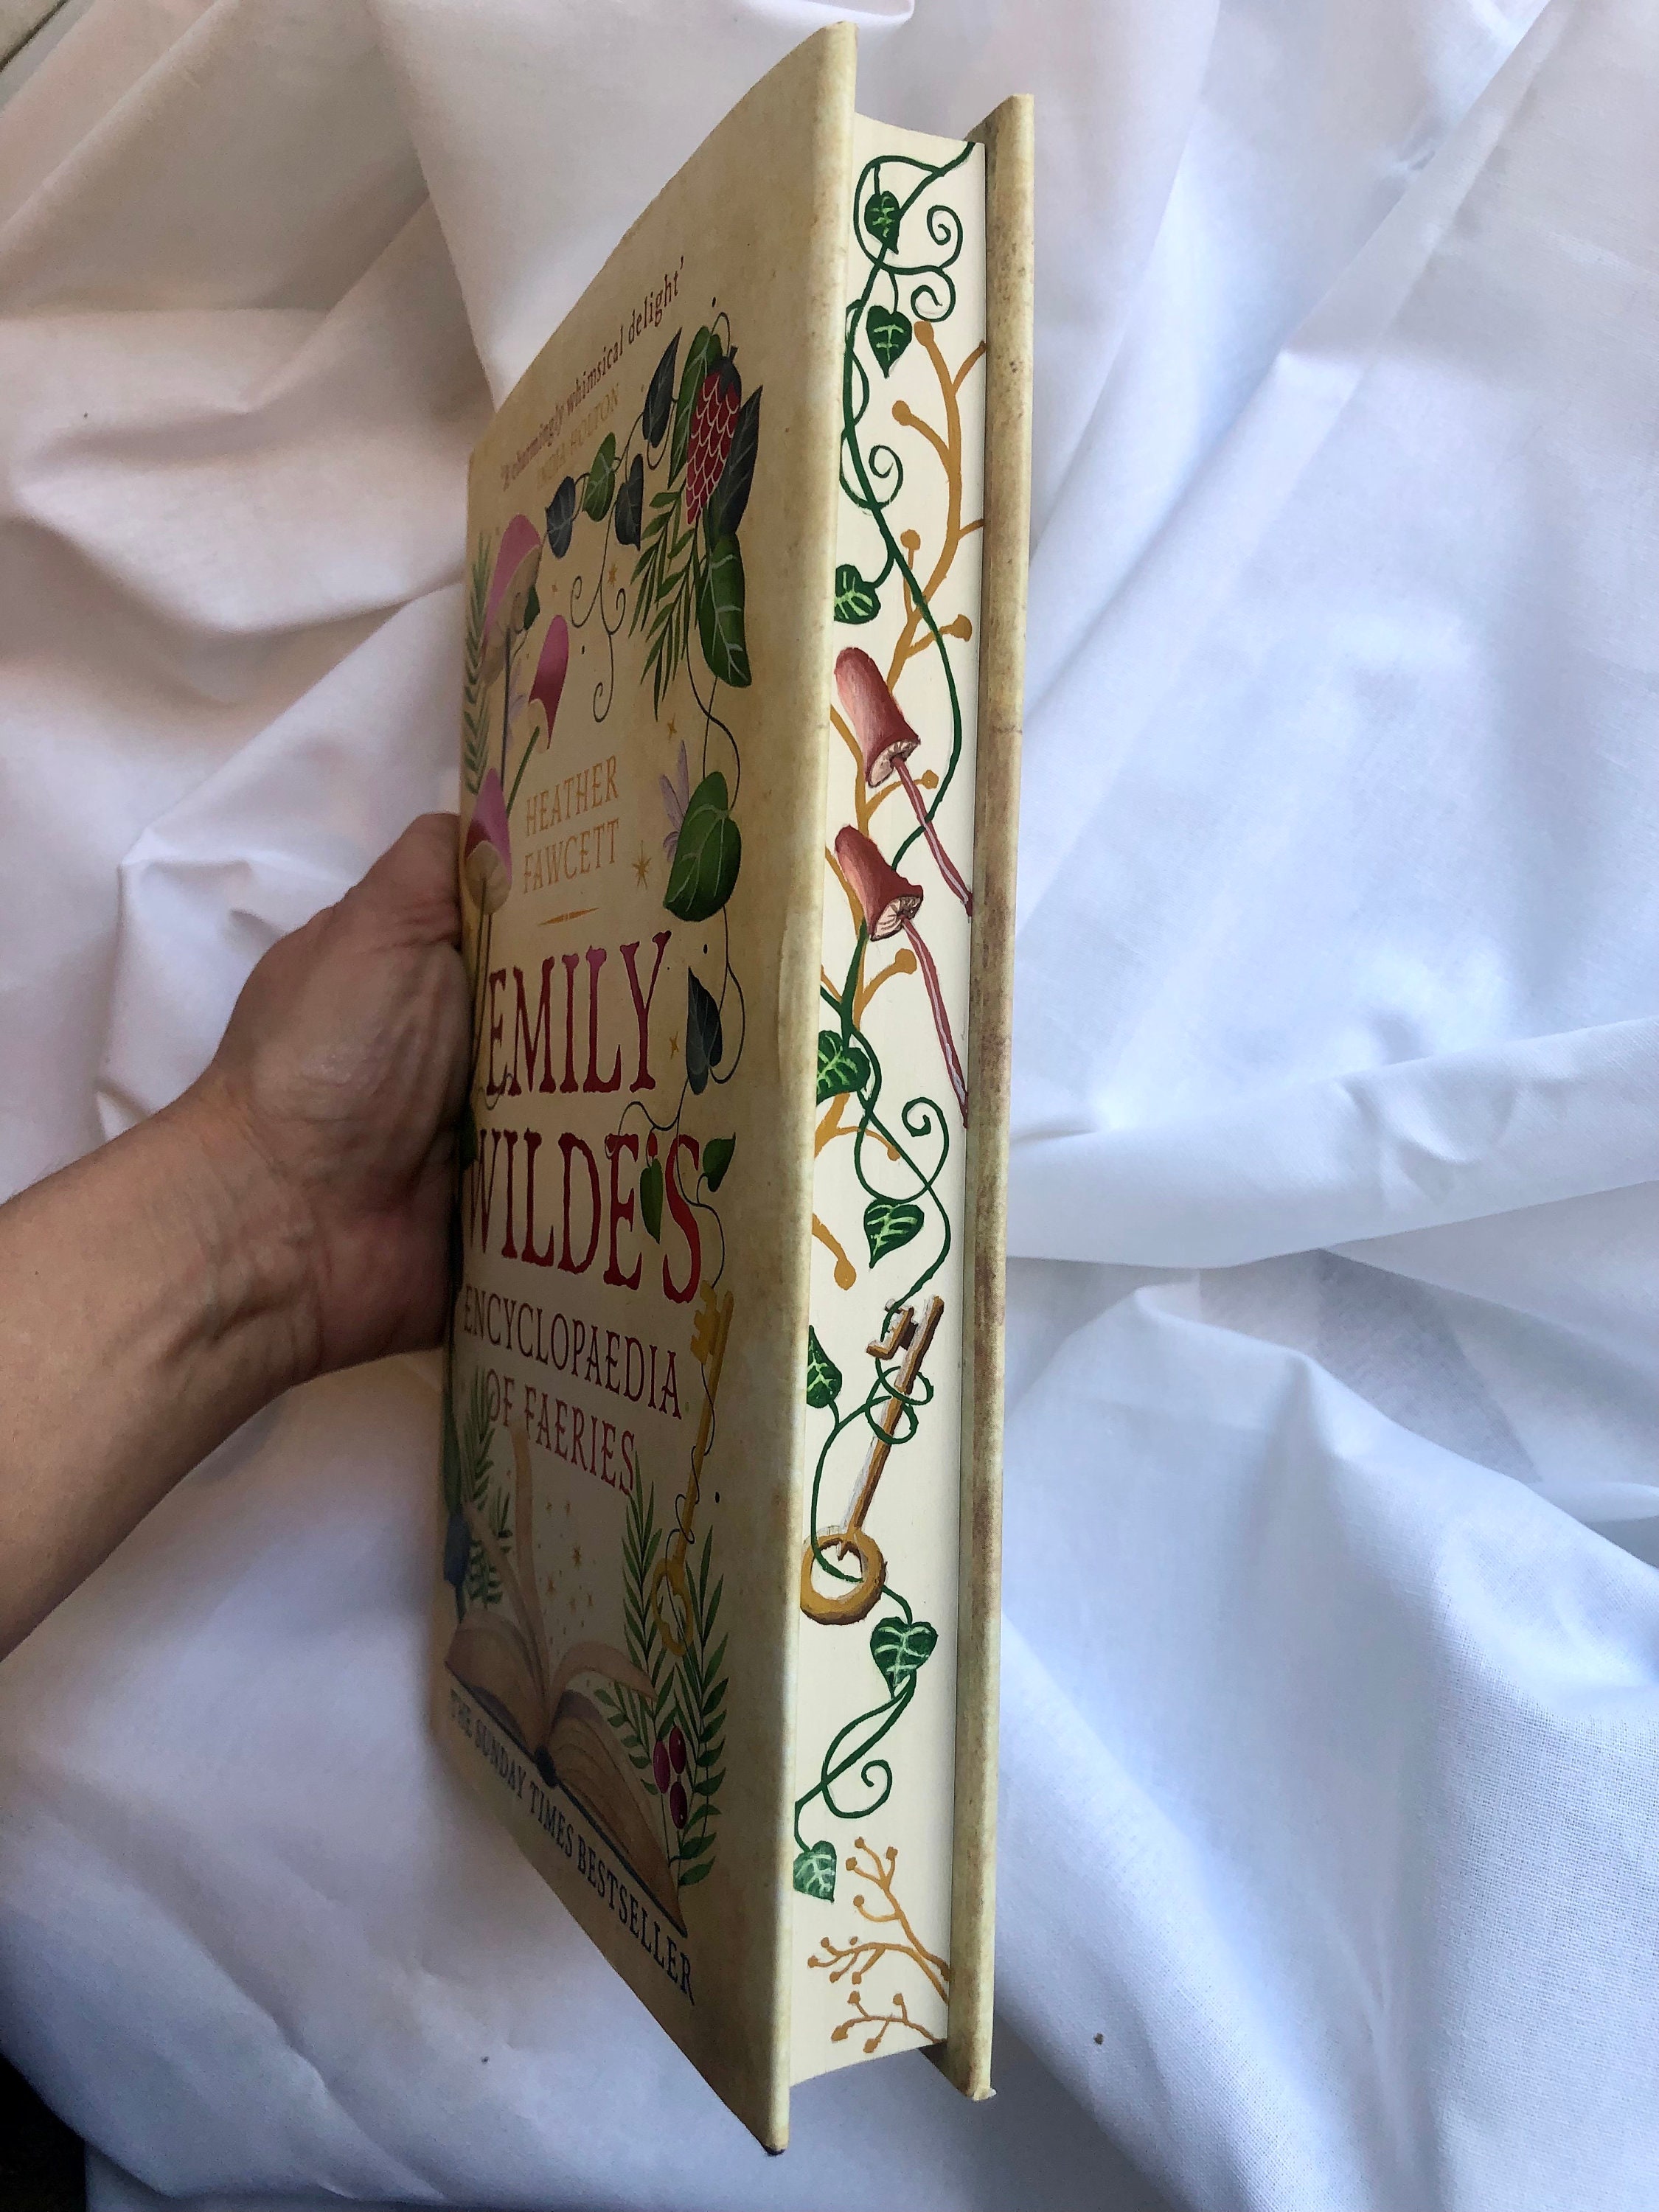 L'Enciclopedia delle fate di Emily Wilde di Heather Fawcett ispirata,  cottagecore, orecchini di falena, falena verde, orecchini cottagecore -   Italia